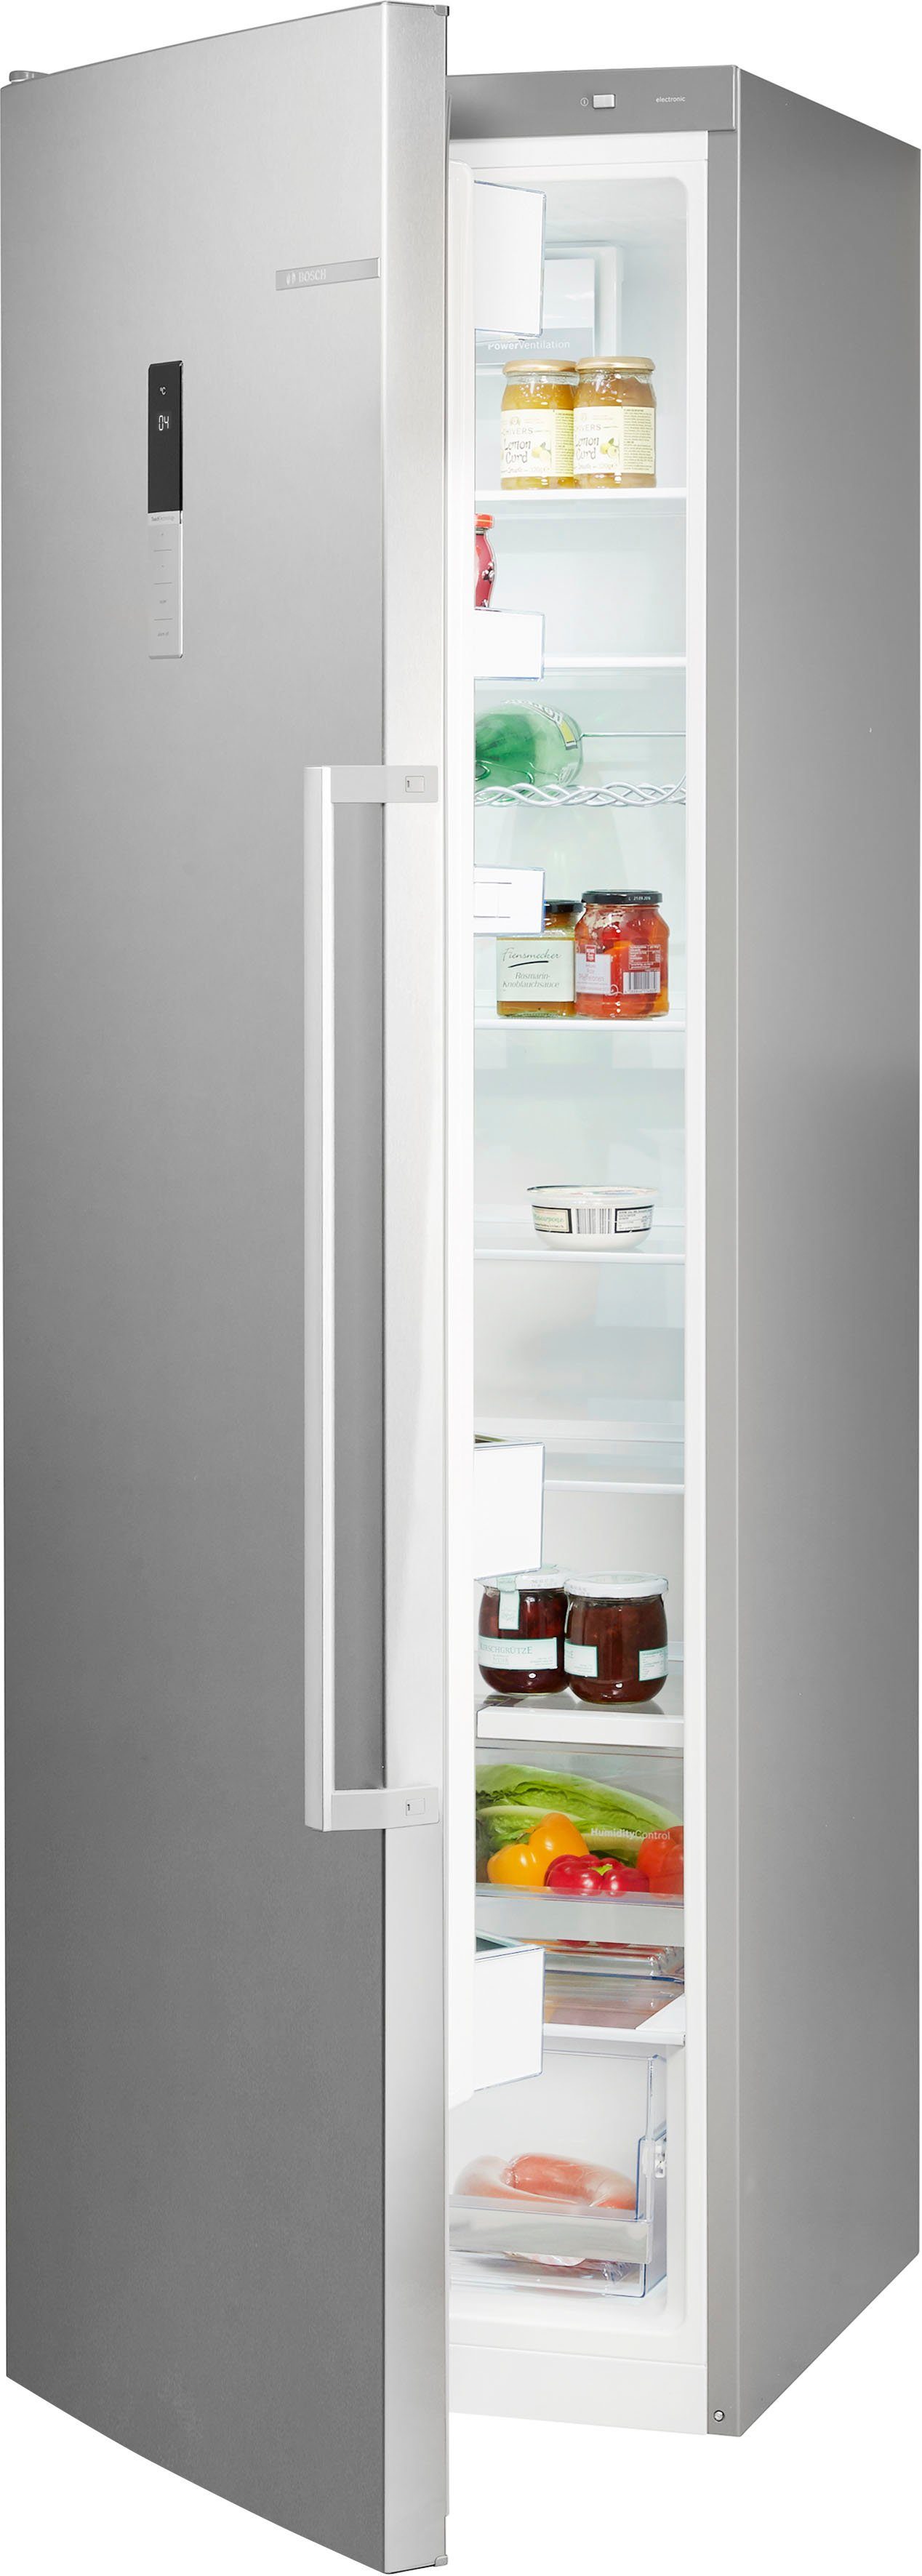 BOSCH Kühlschrank 6 KSV36BIEP, 186 cm hoch, 60 cm breit, EasyLift  Glasplatte: leichte Höhenverstellbarkeit, dadurch flexibler Innenraum